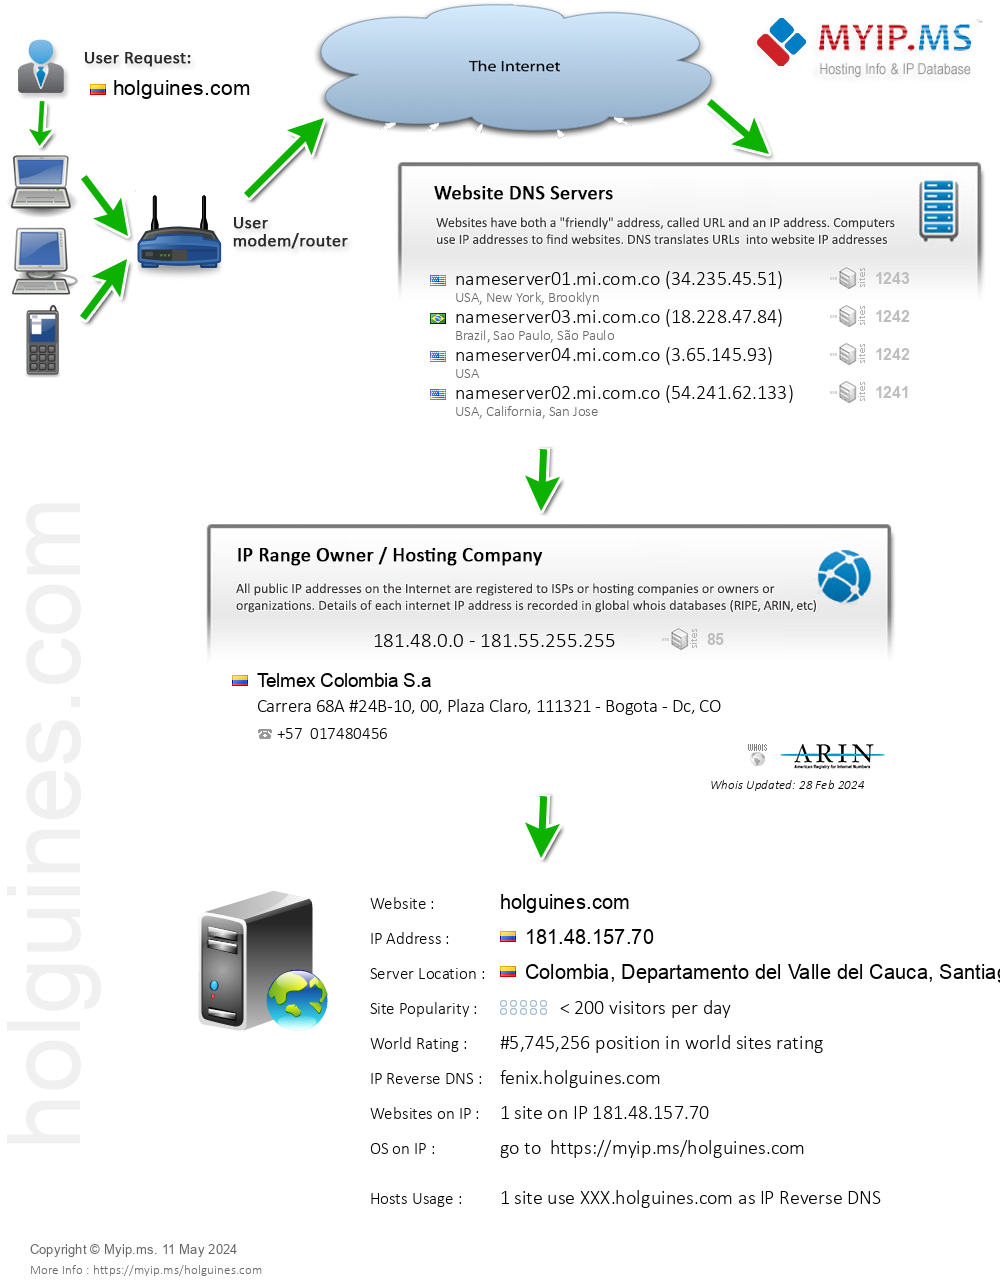 Holguines.com - Website Hosting Visual IP Diagram